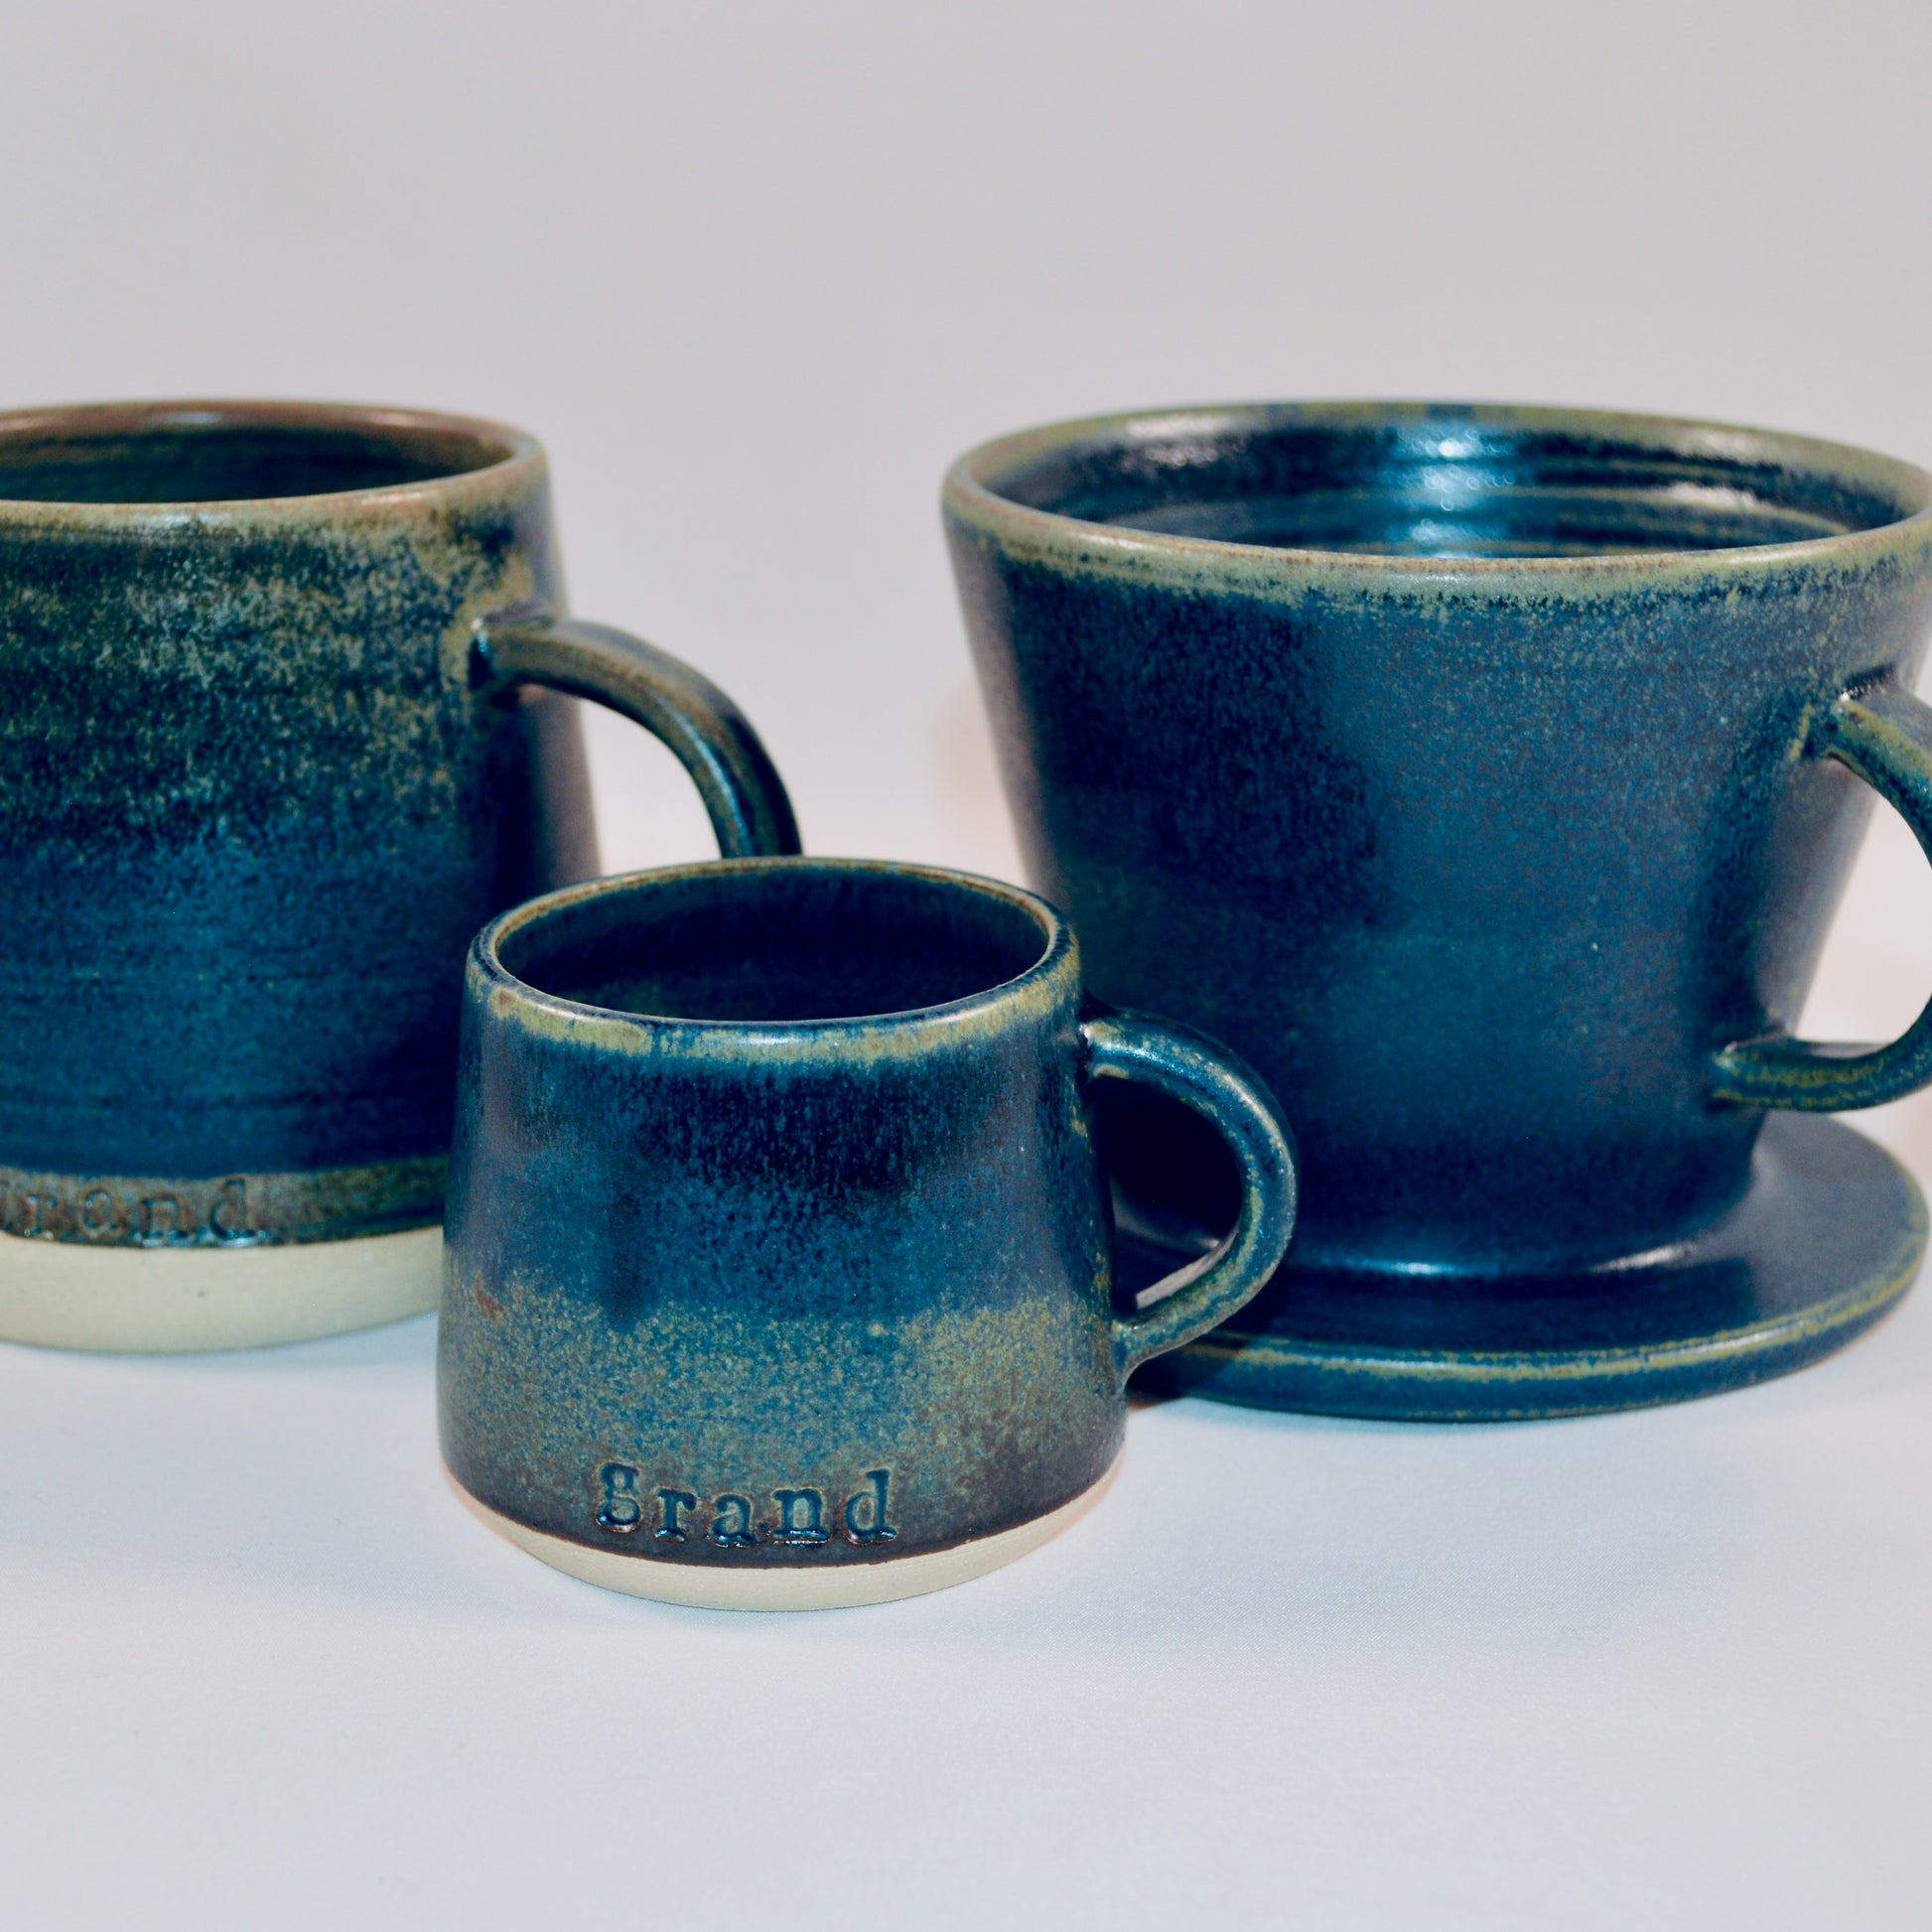 Finnegan Pottery Mug, Cup, Filter - Drumgreenagh Gift Shop